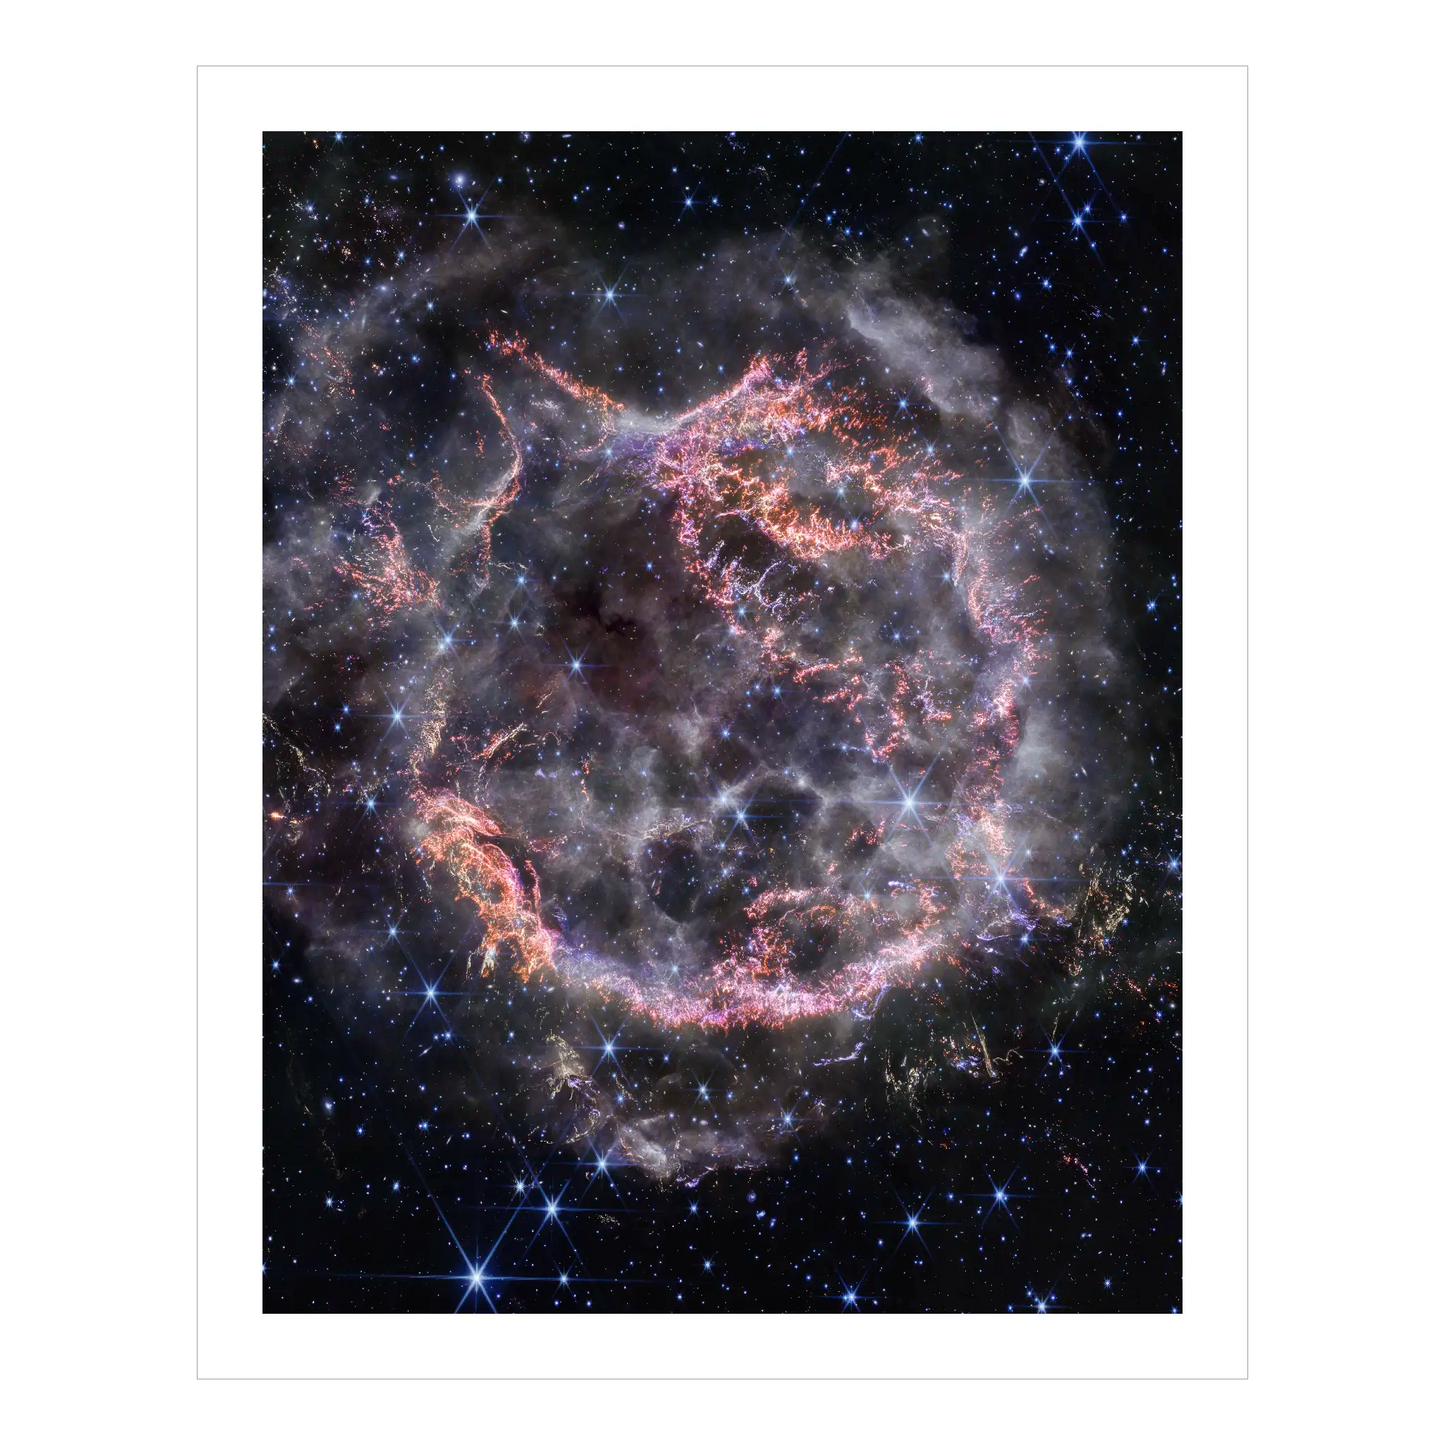 Supernova Remnant Cassiopeia A (NIRCam image)